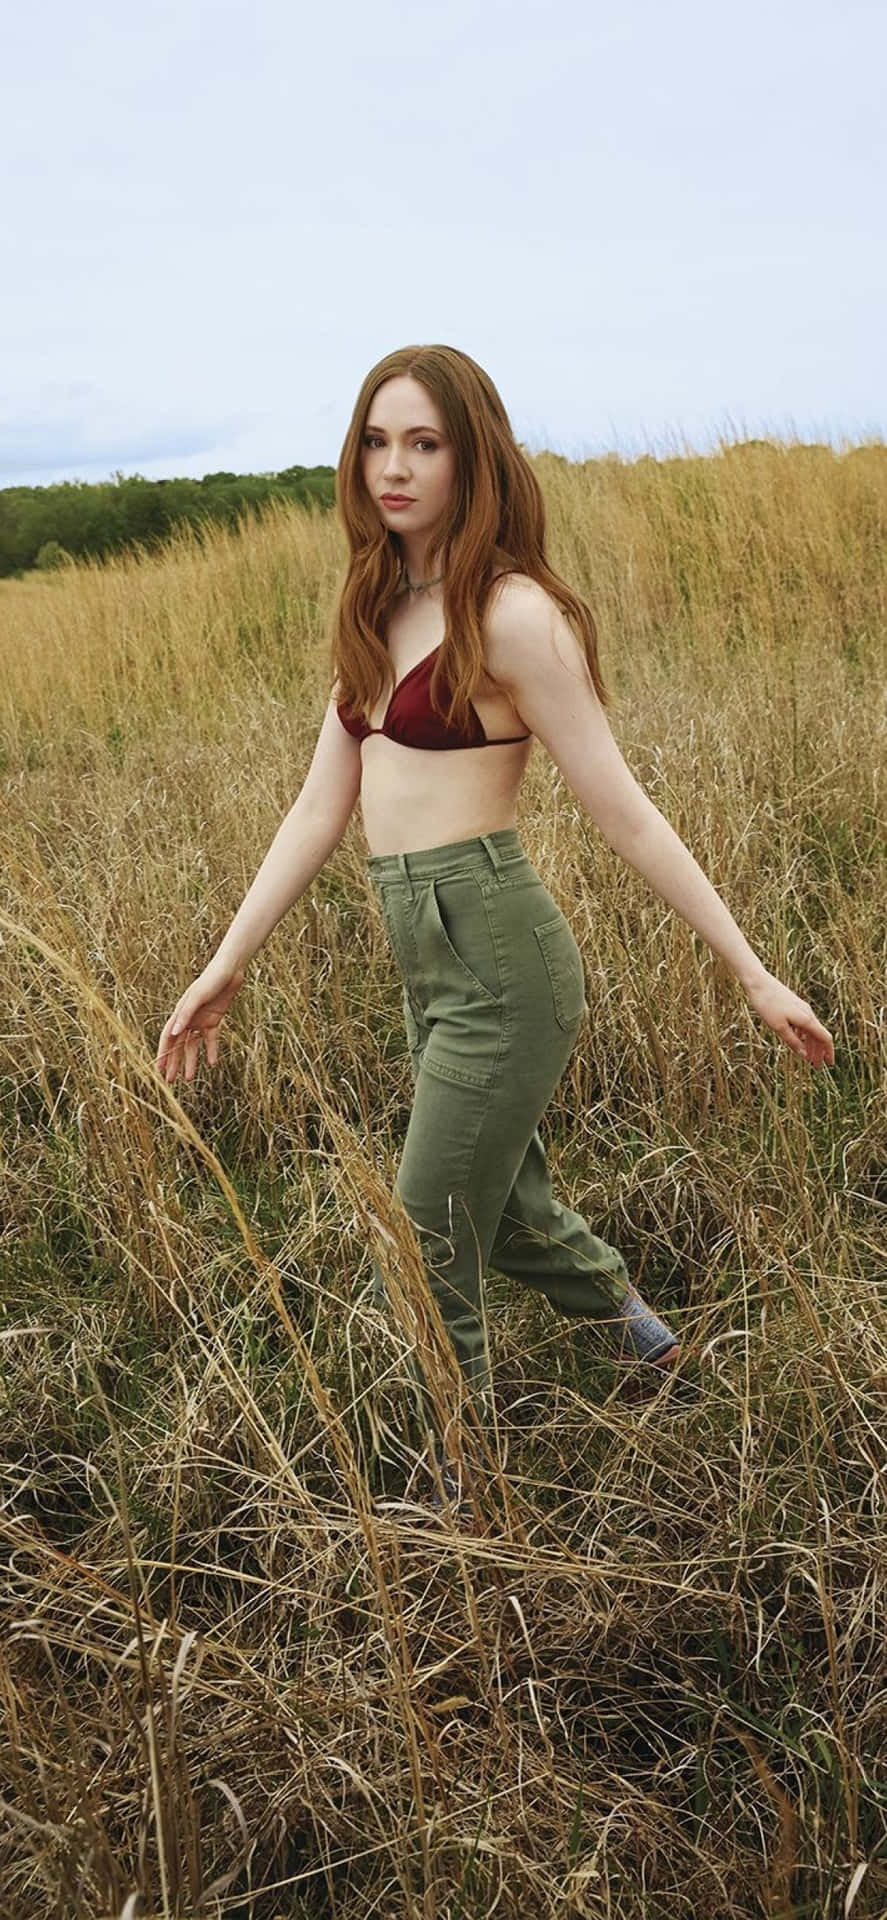 A Woman In A Bikini Standing In A Field Wallpaper